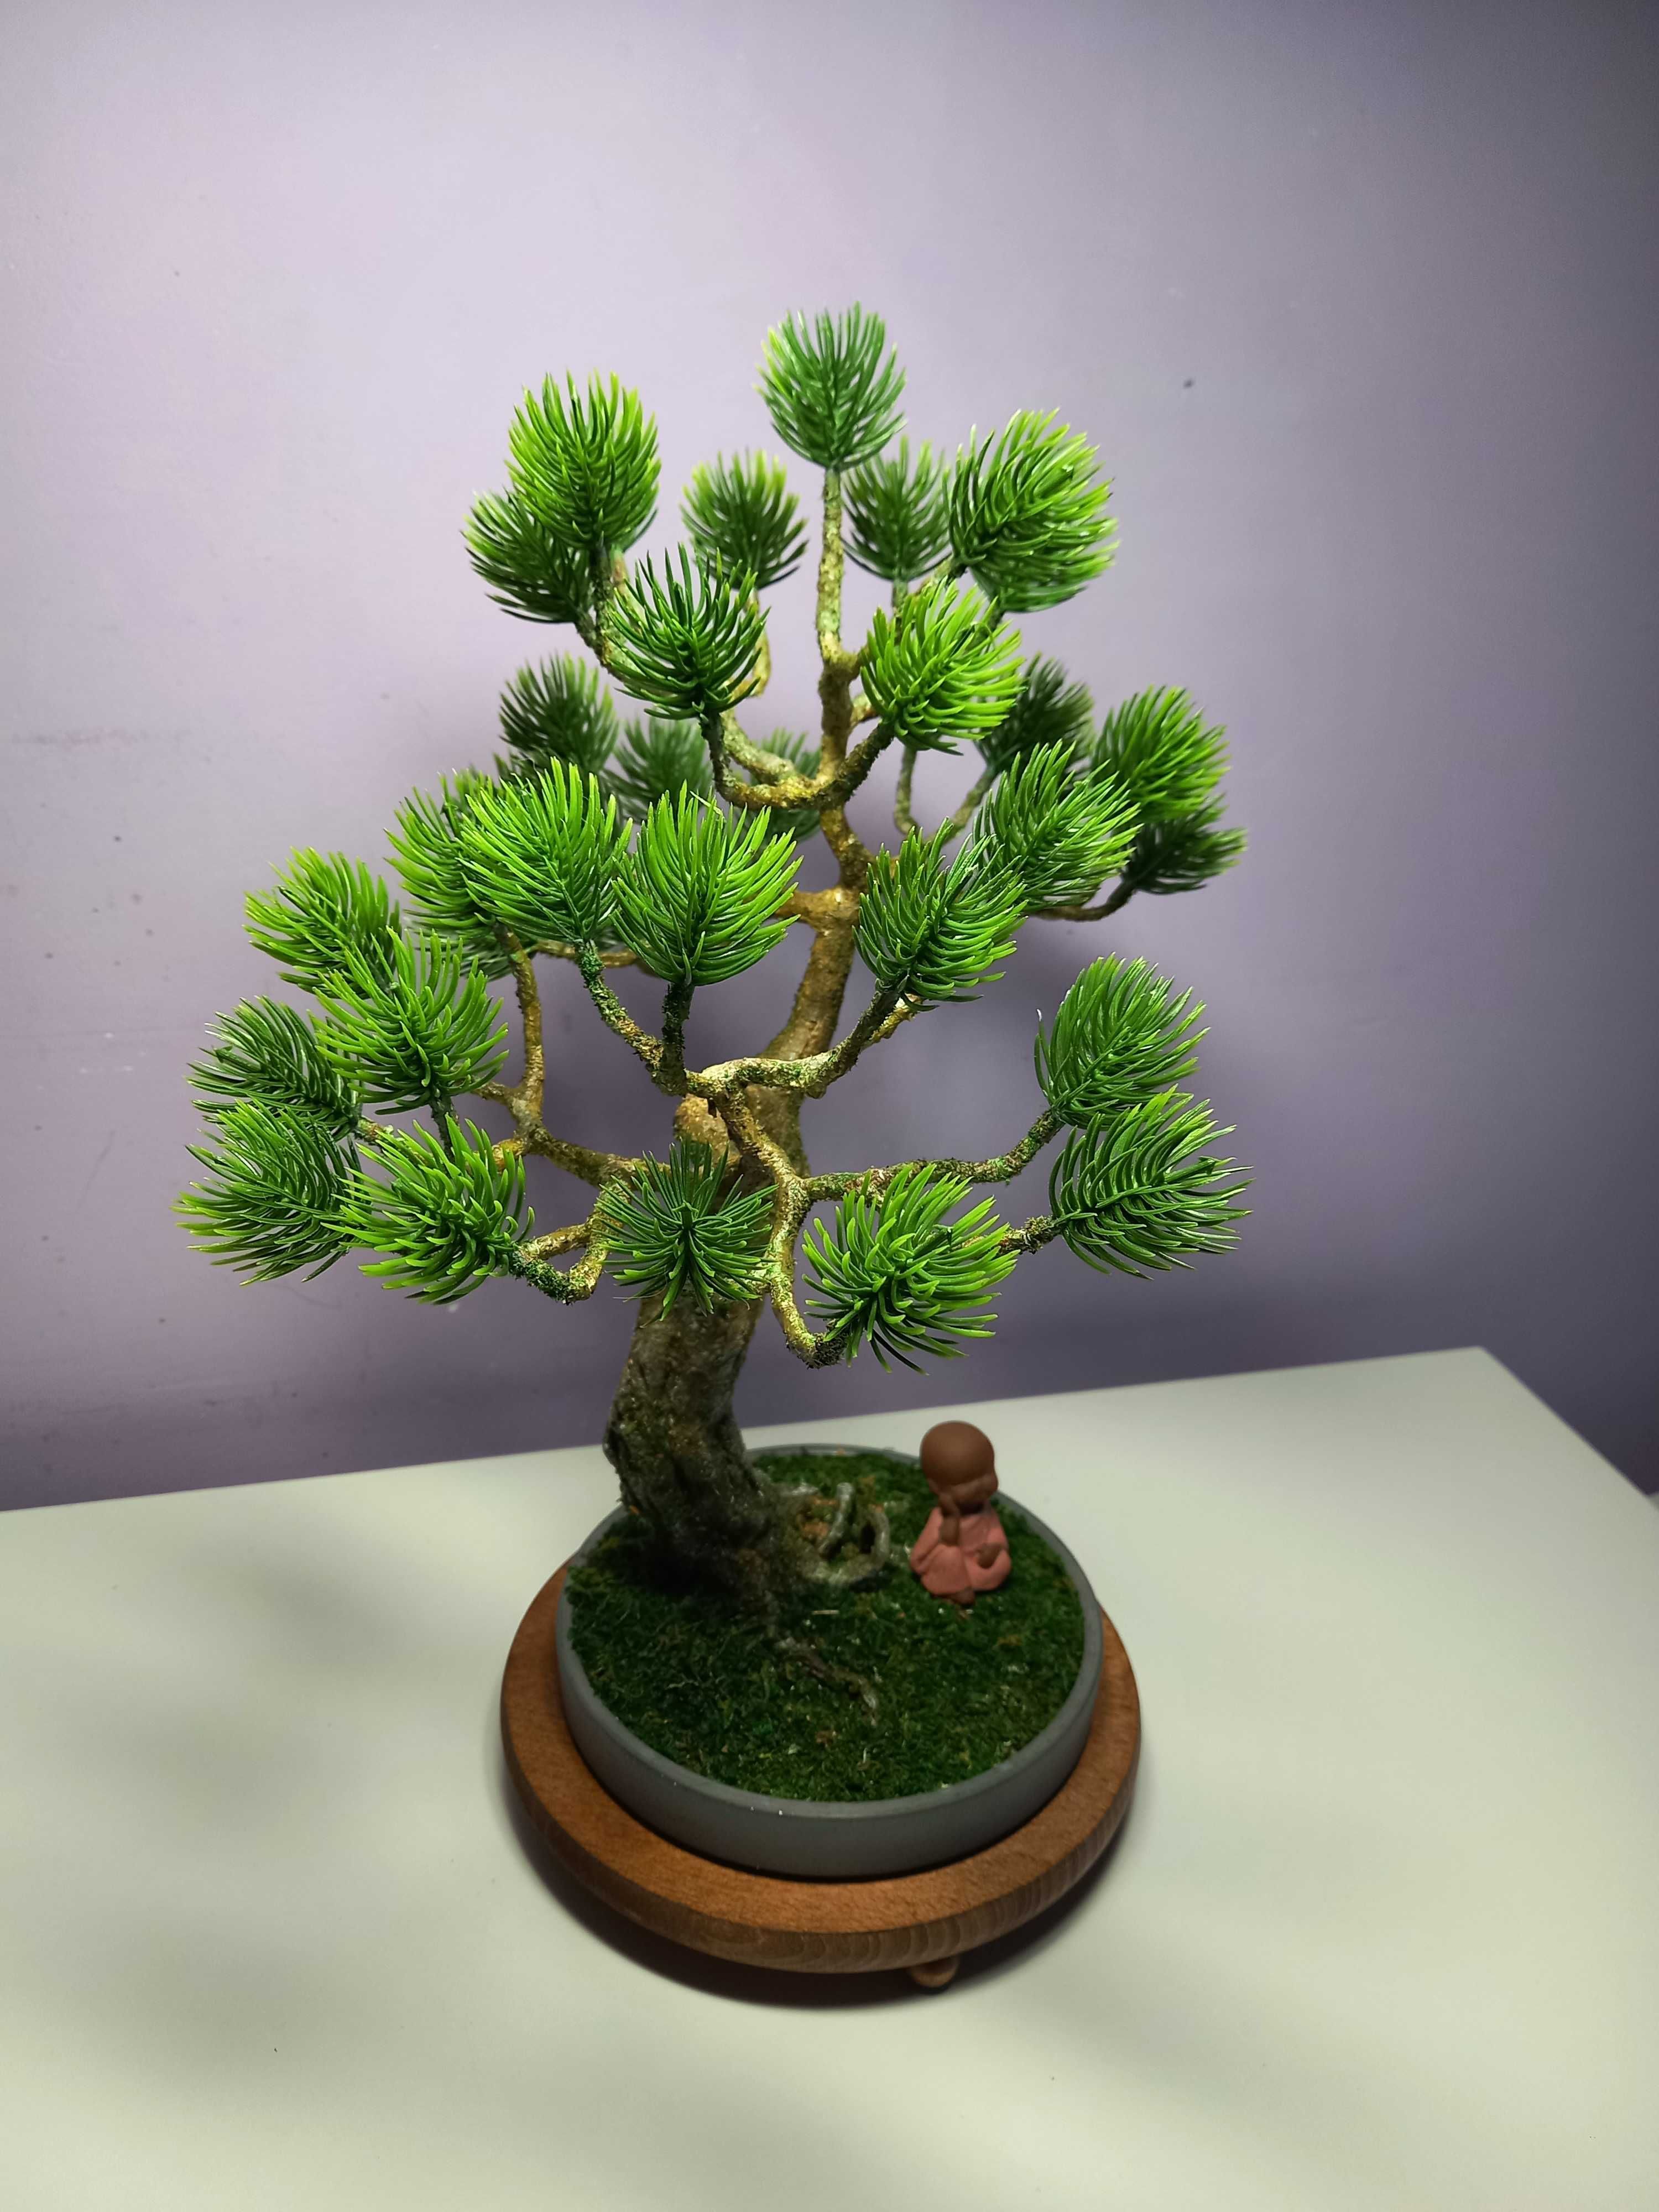 Sztuczne drzewko. Imitacja bonsai.